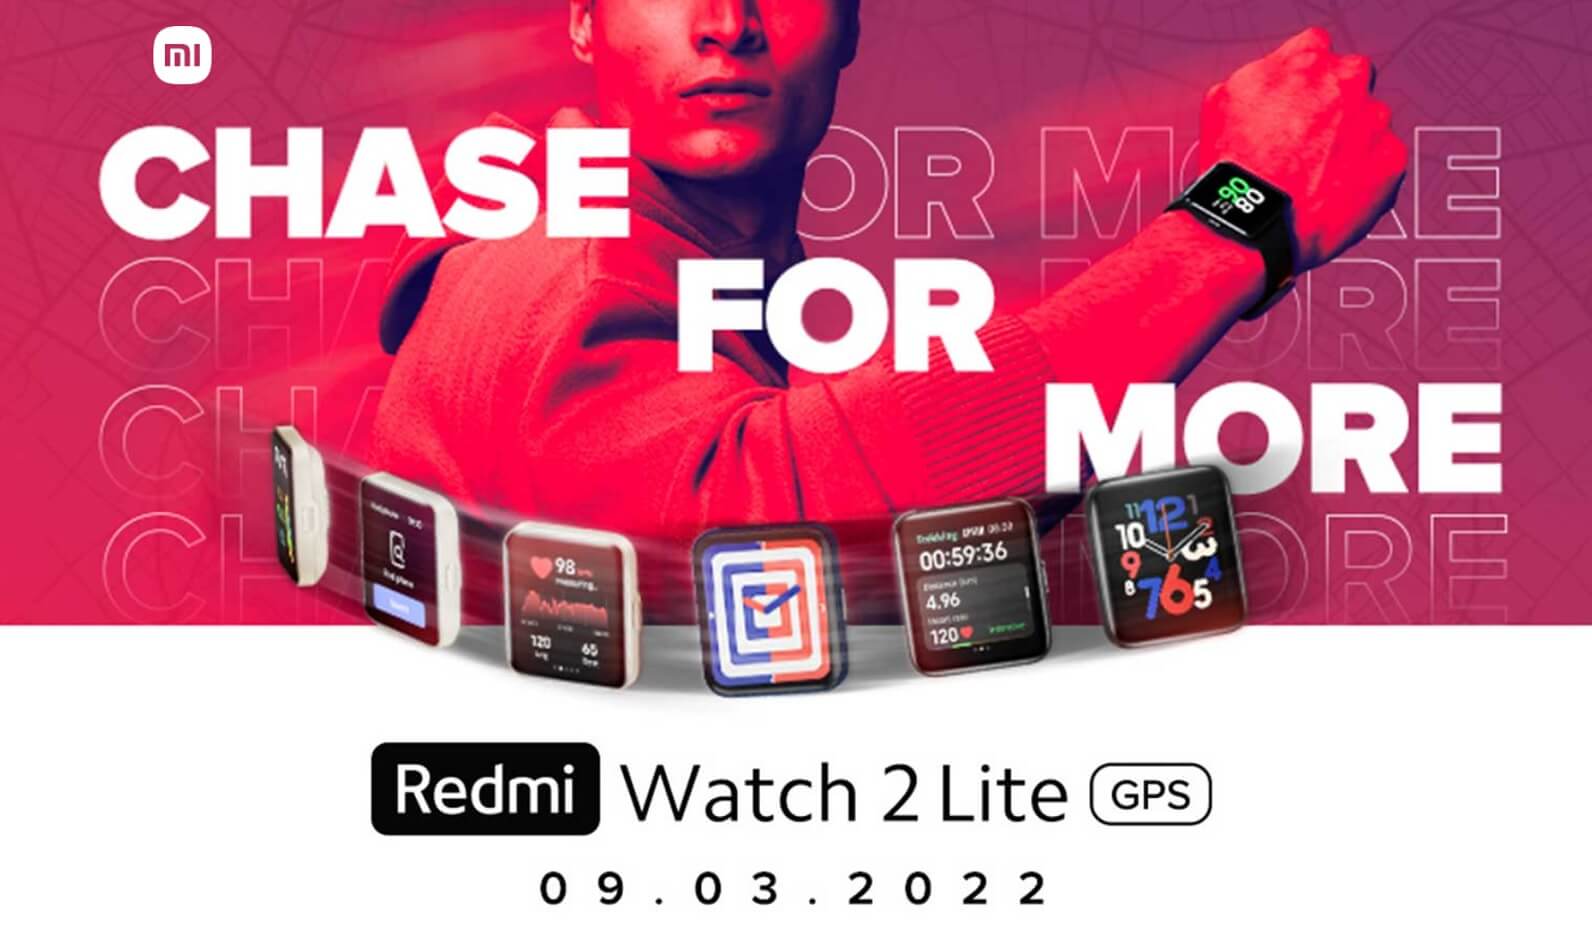 Redmi Watch 2 Lite launch invite